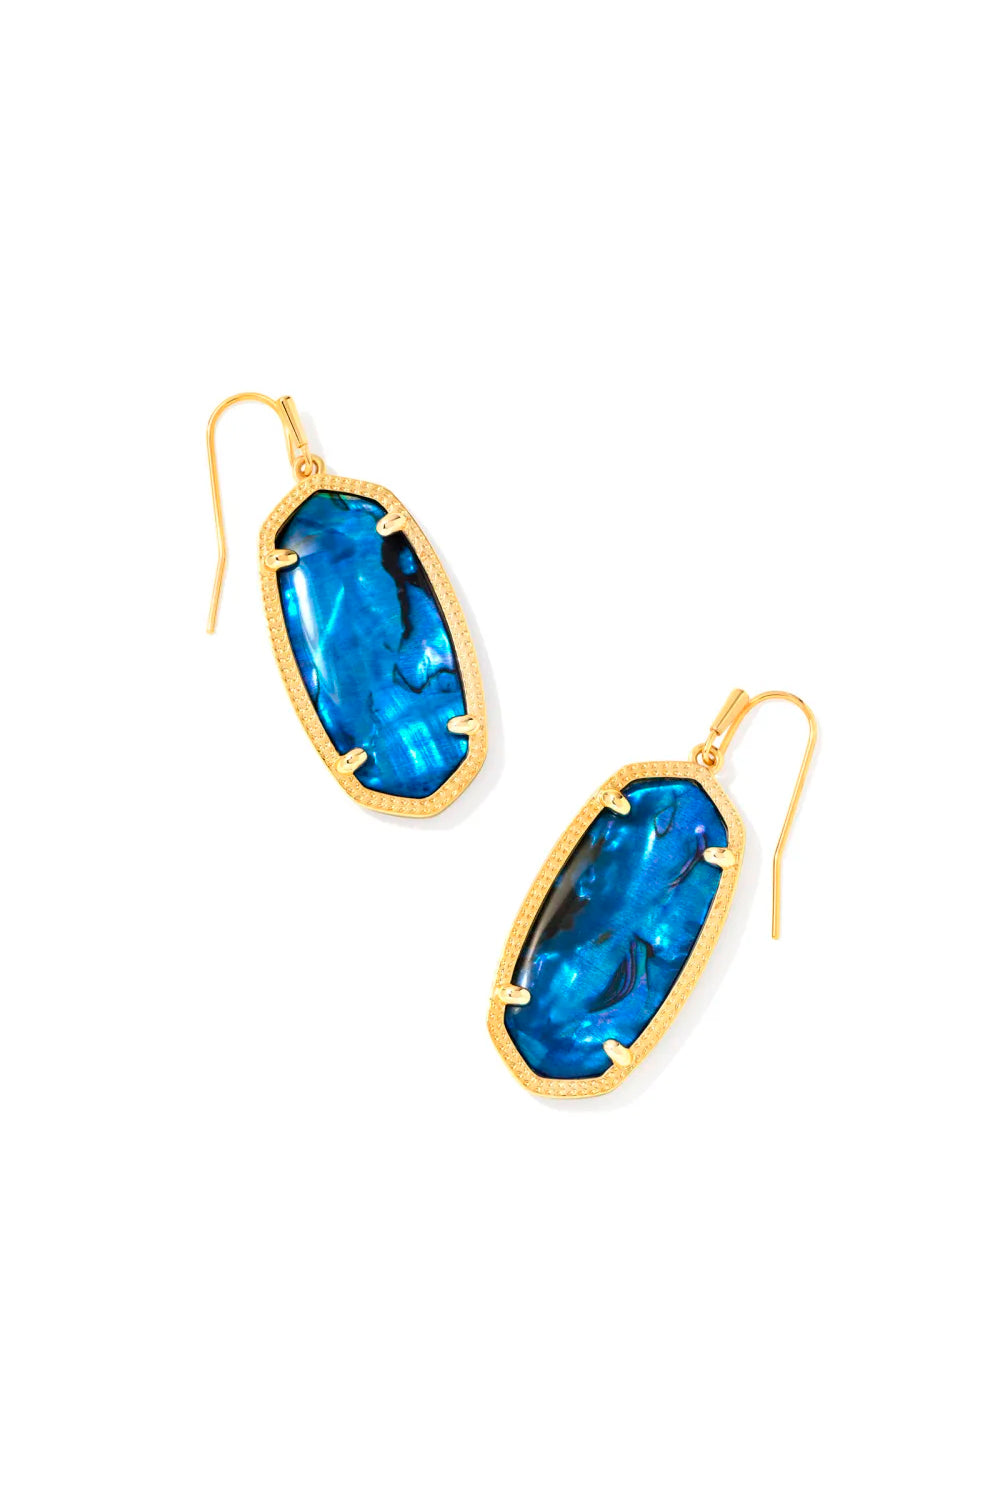 Kendra Scott: Elle Gold Drop Earrings - Navy Abalone | Makk Fashions